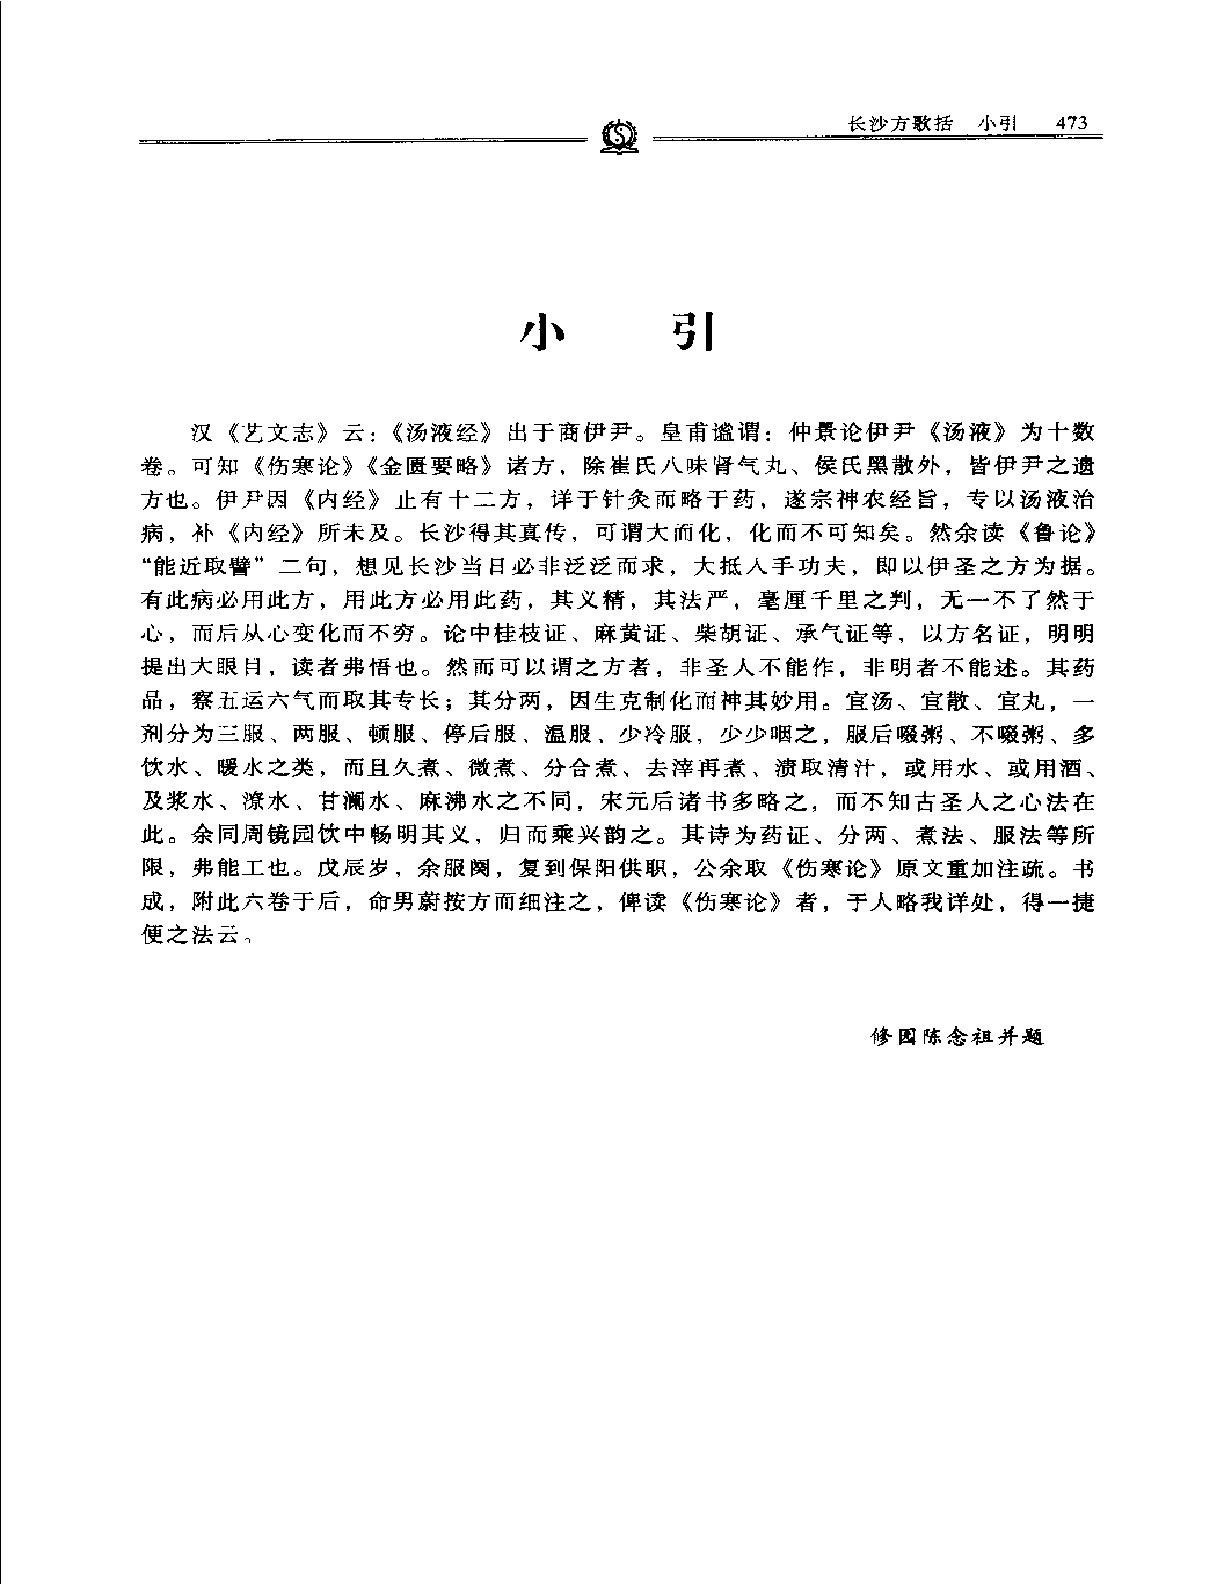 长沙方歌括——陈修园.PDF